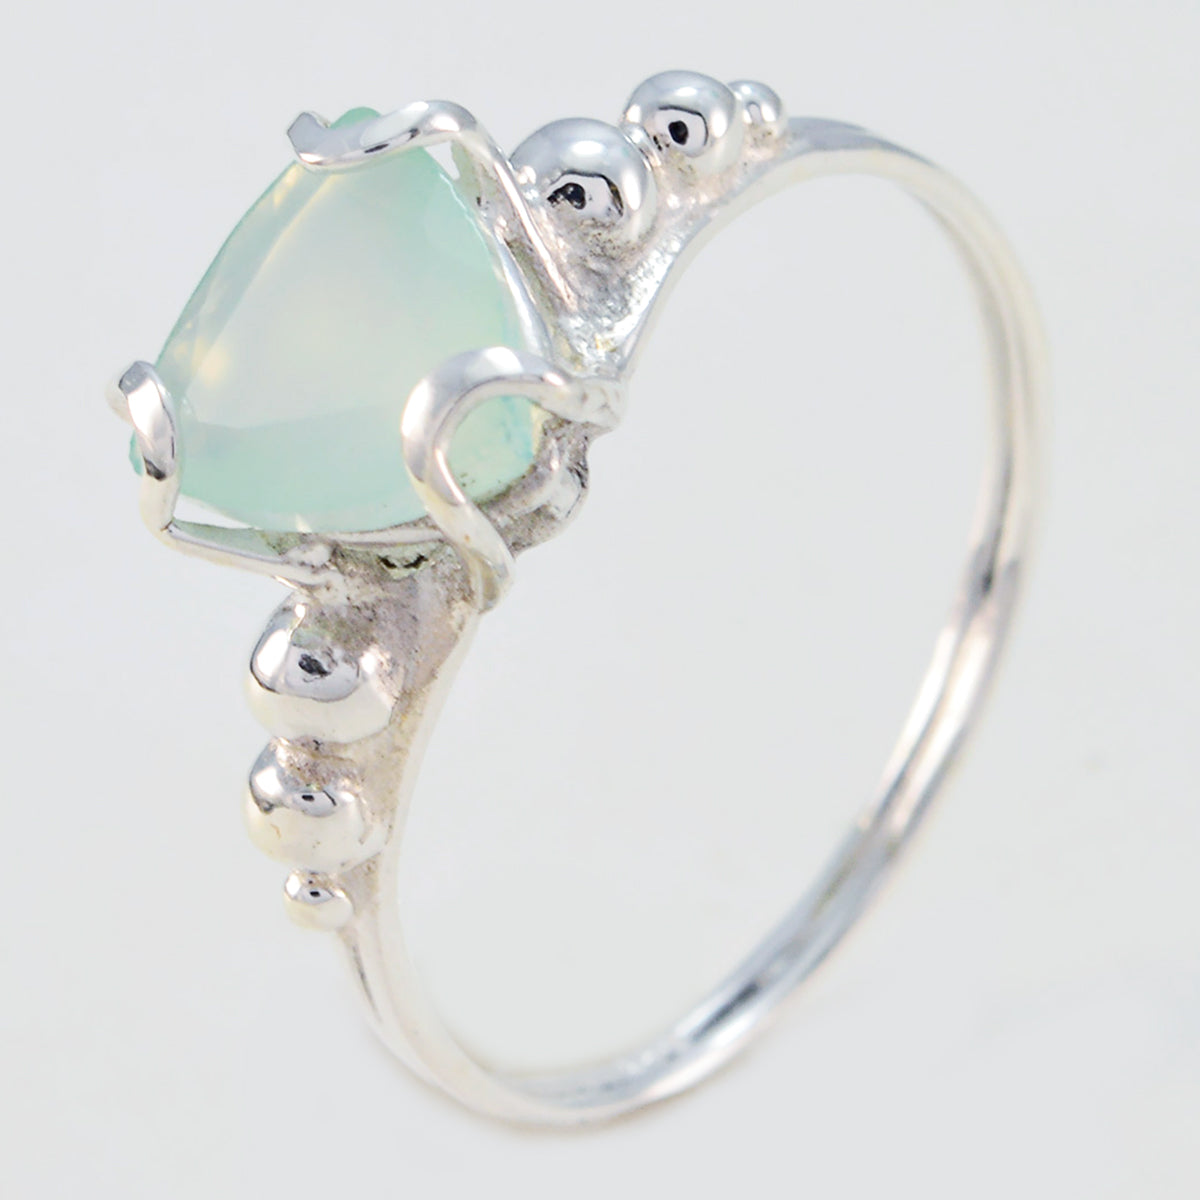 Riyo Slightly Gems Aqua Chalcedony 925 Silver Rings Gypsy Jewelry